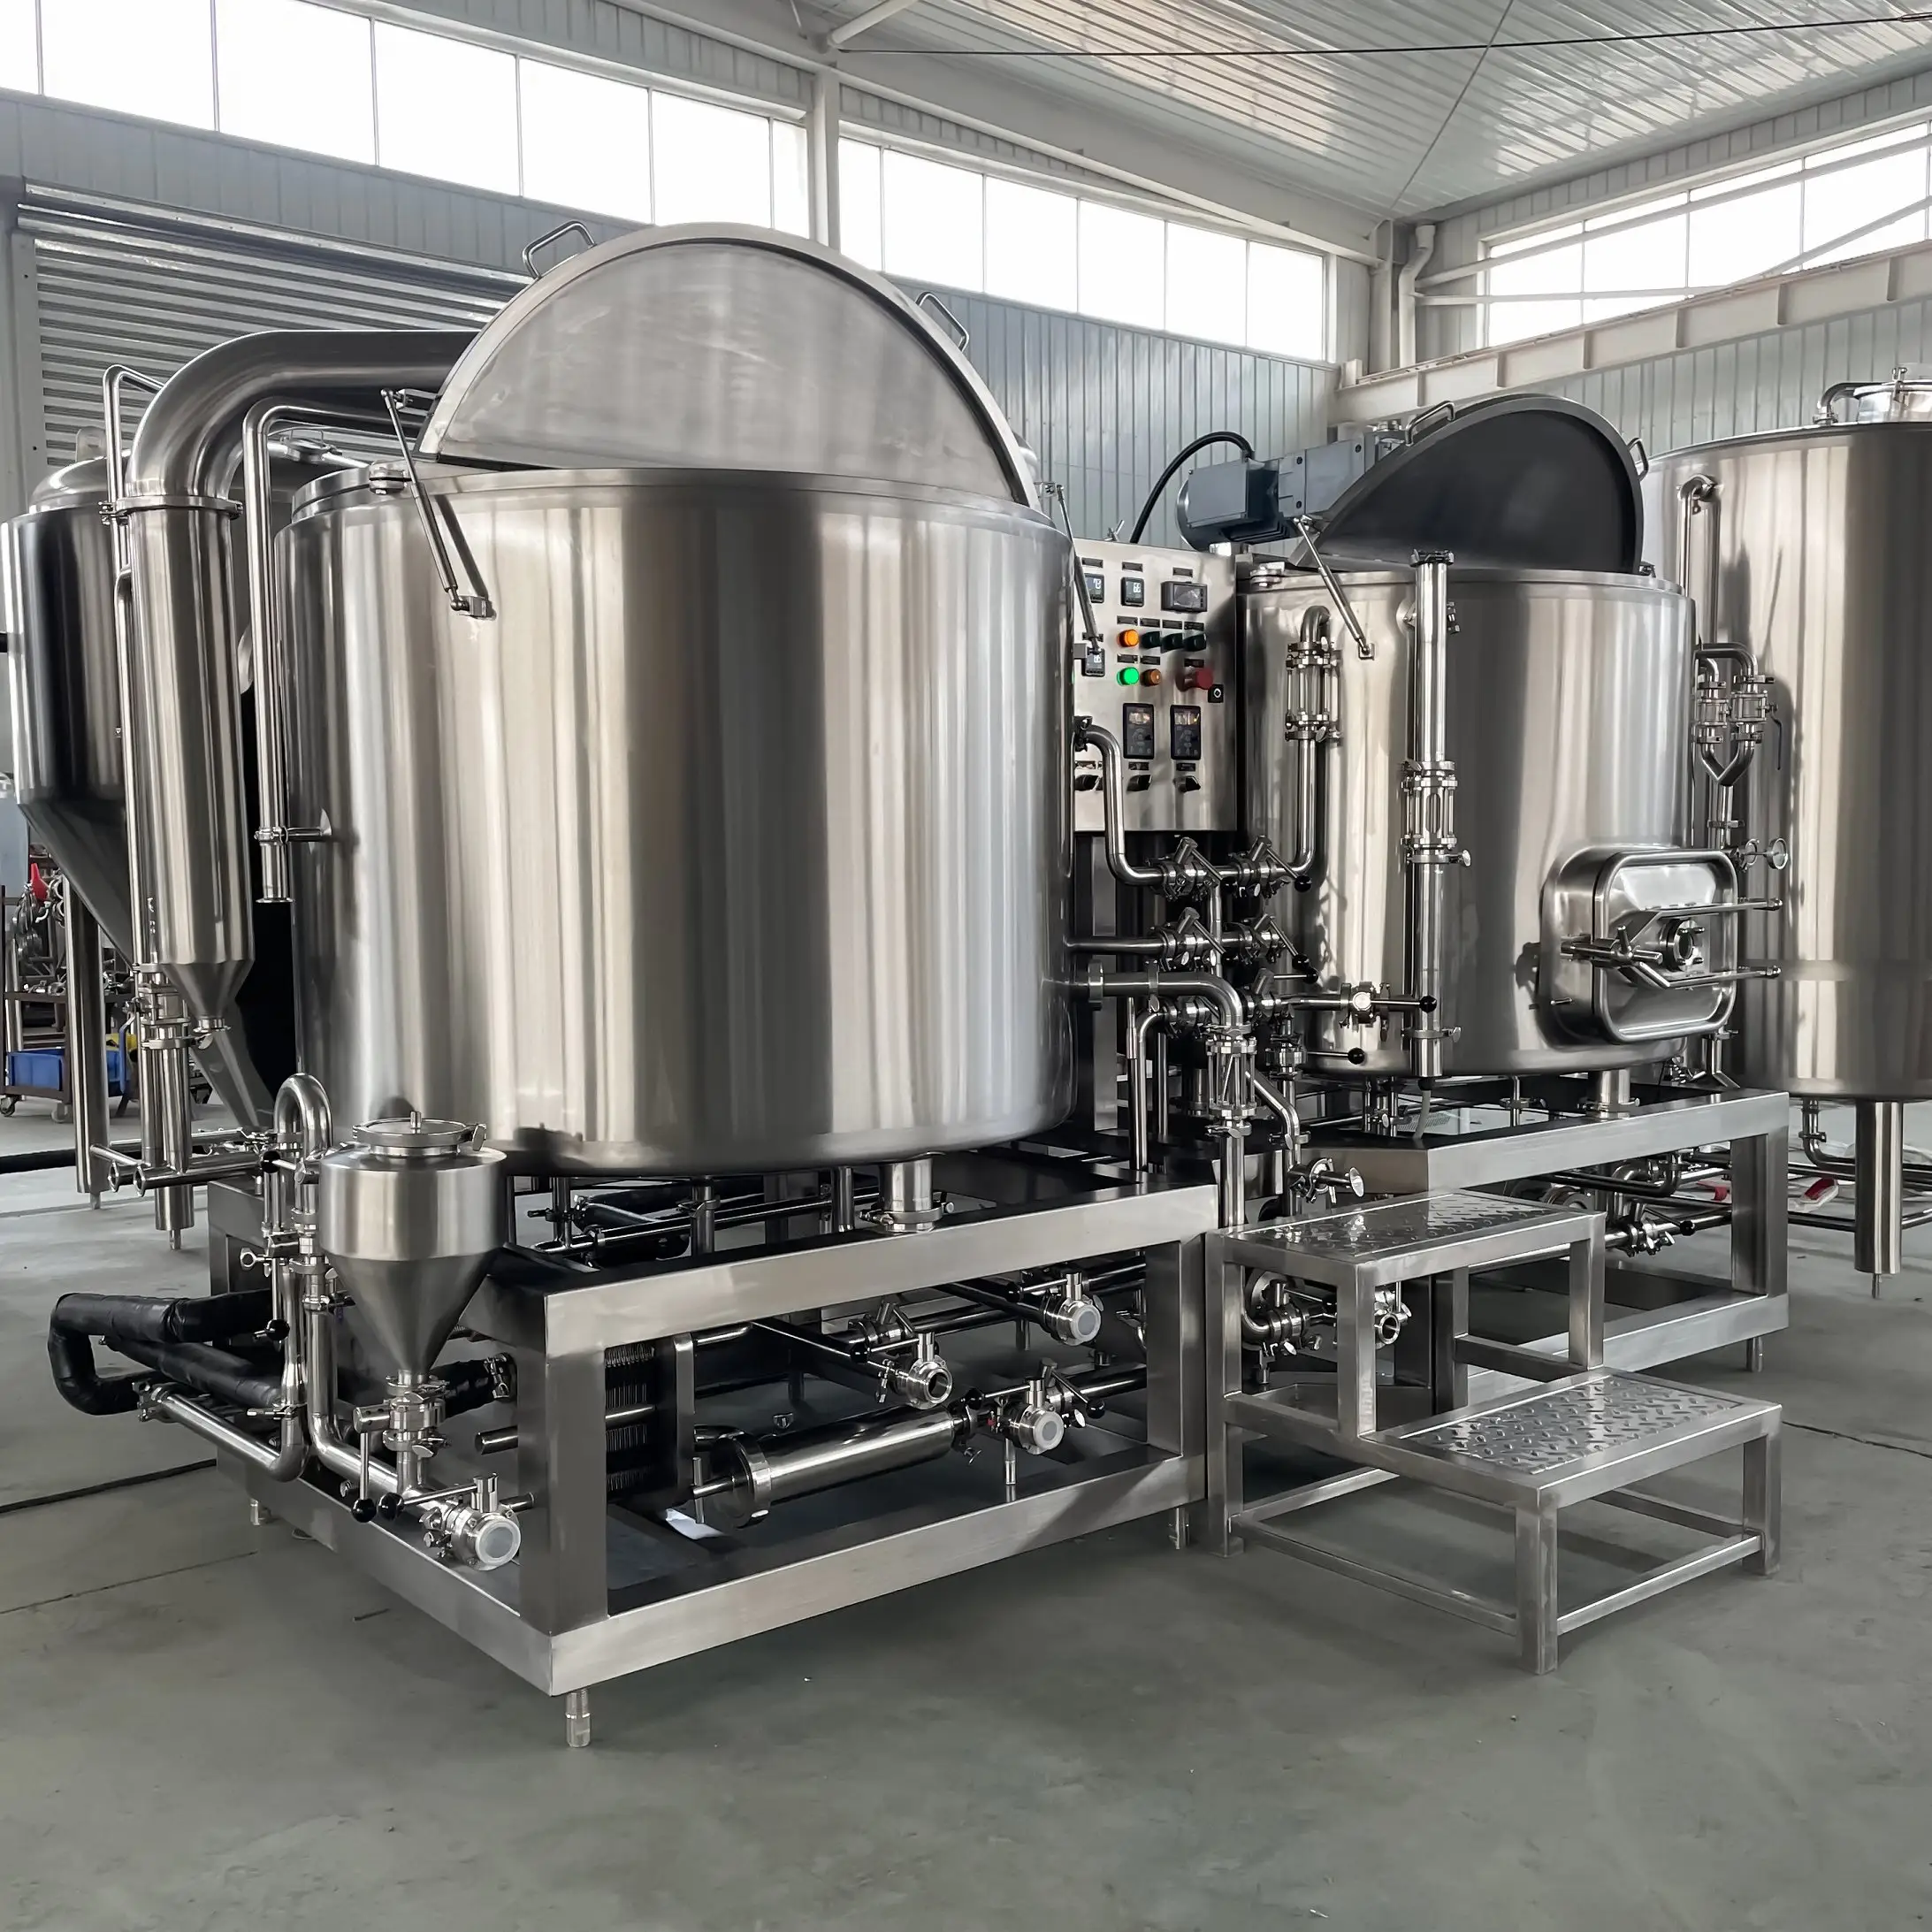 醸造所3.5bblクラフトビール設備醸造所醸造ビールシステム/中国ビール製造ライン3.5bbl醸造設備